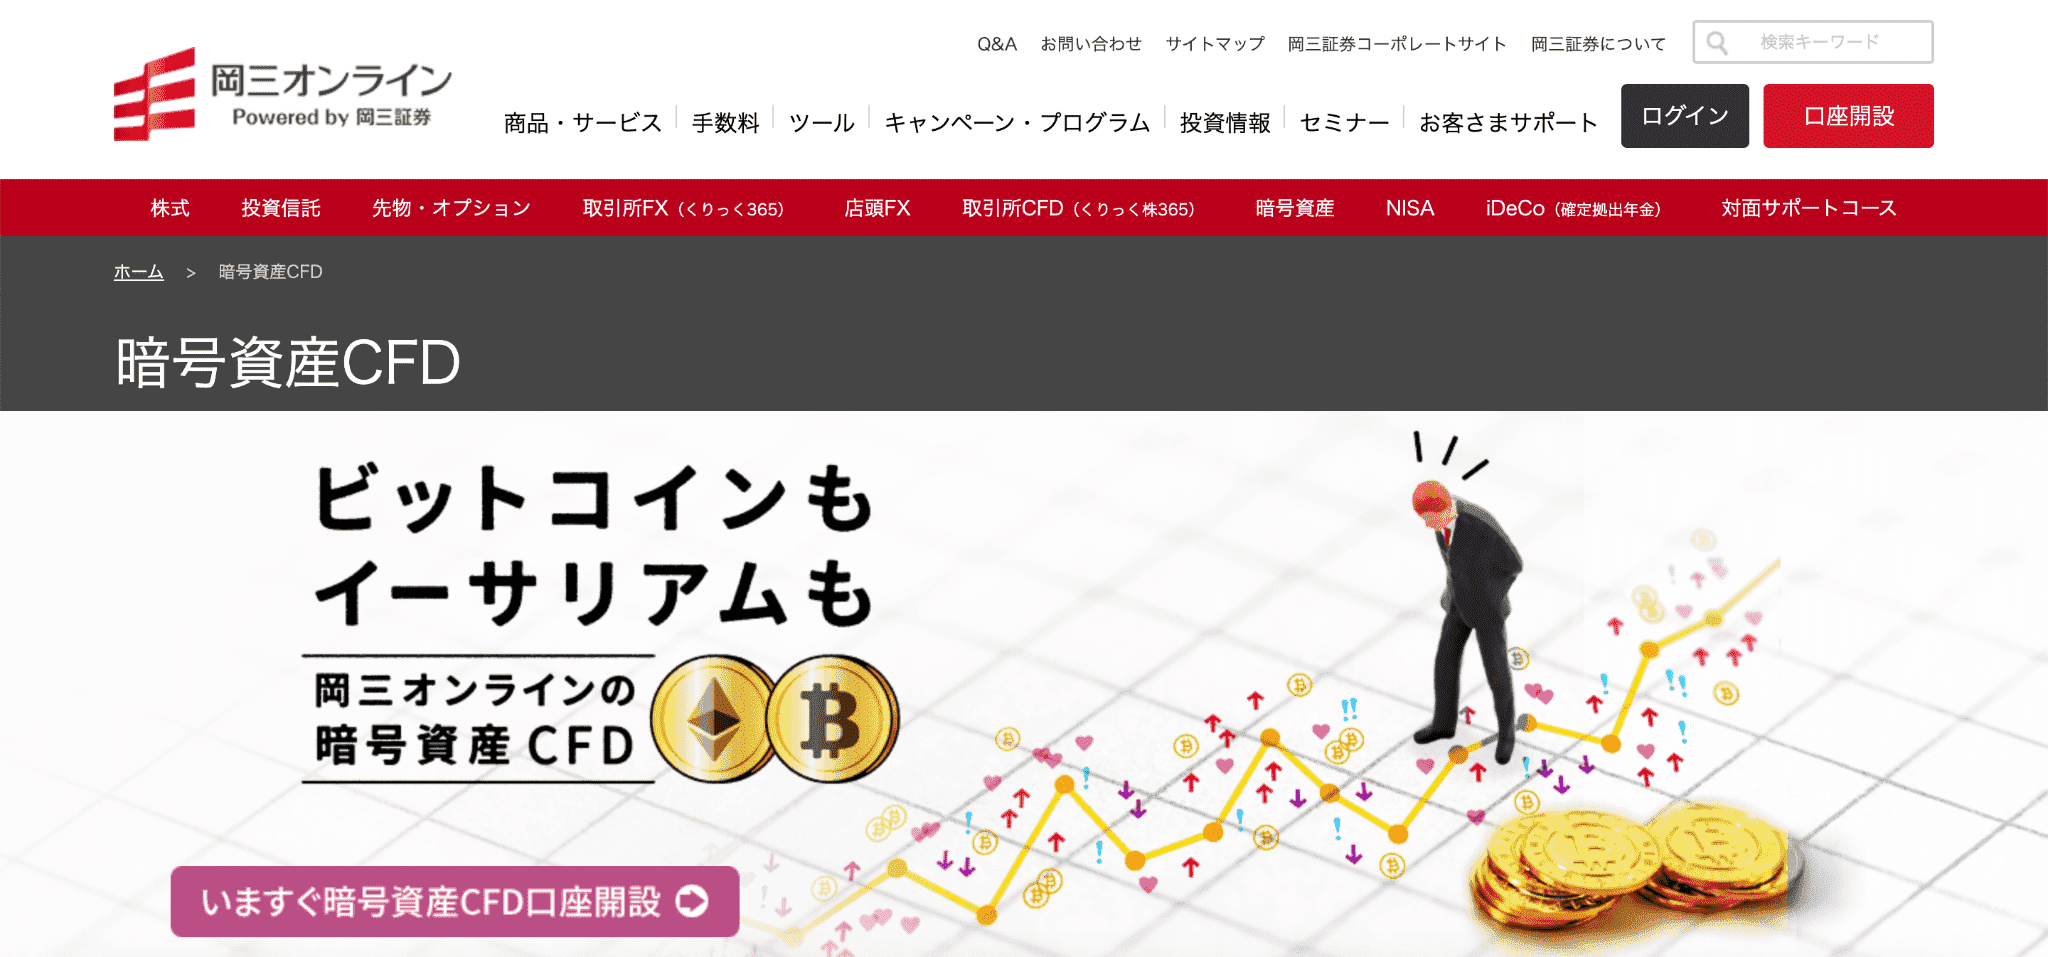 岡三証券暗号資産CFD